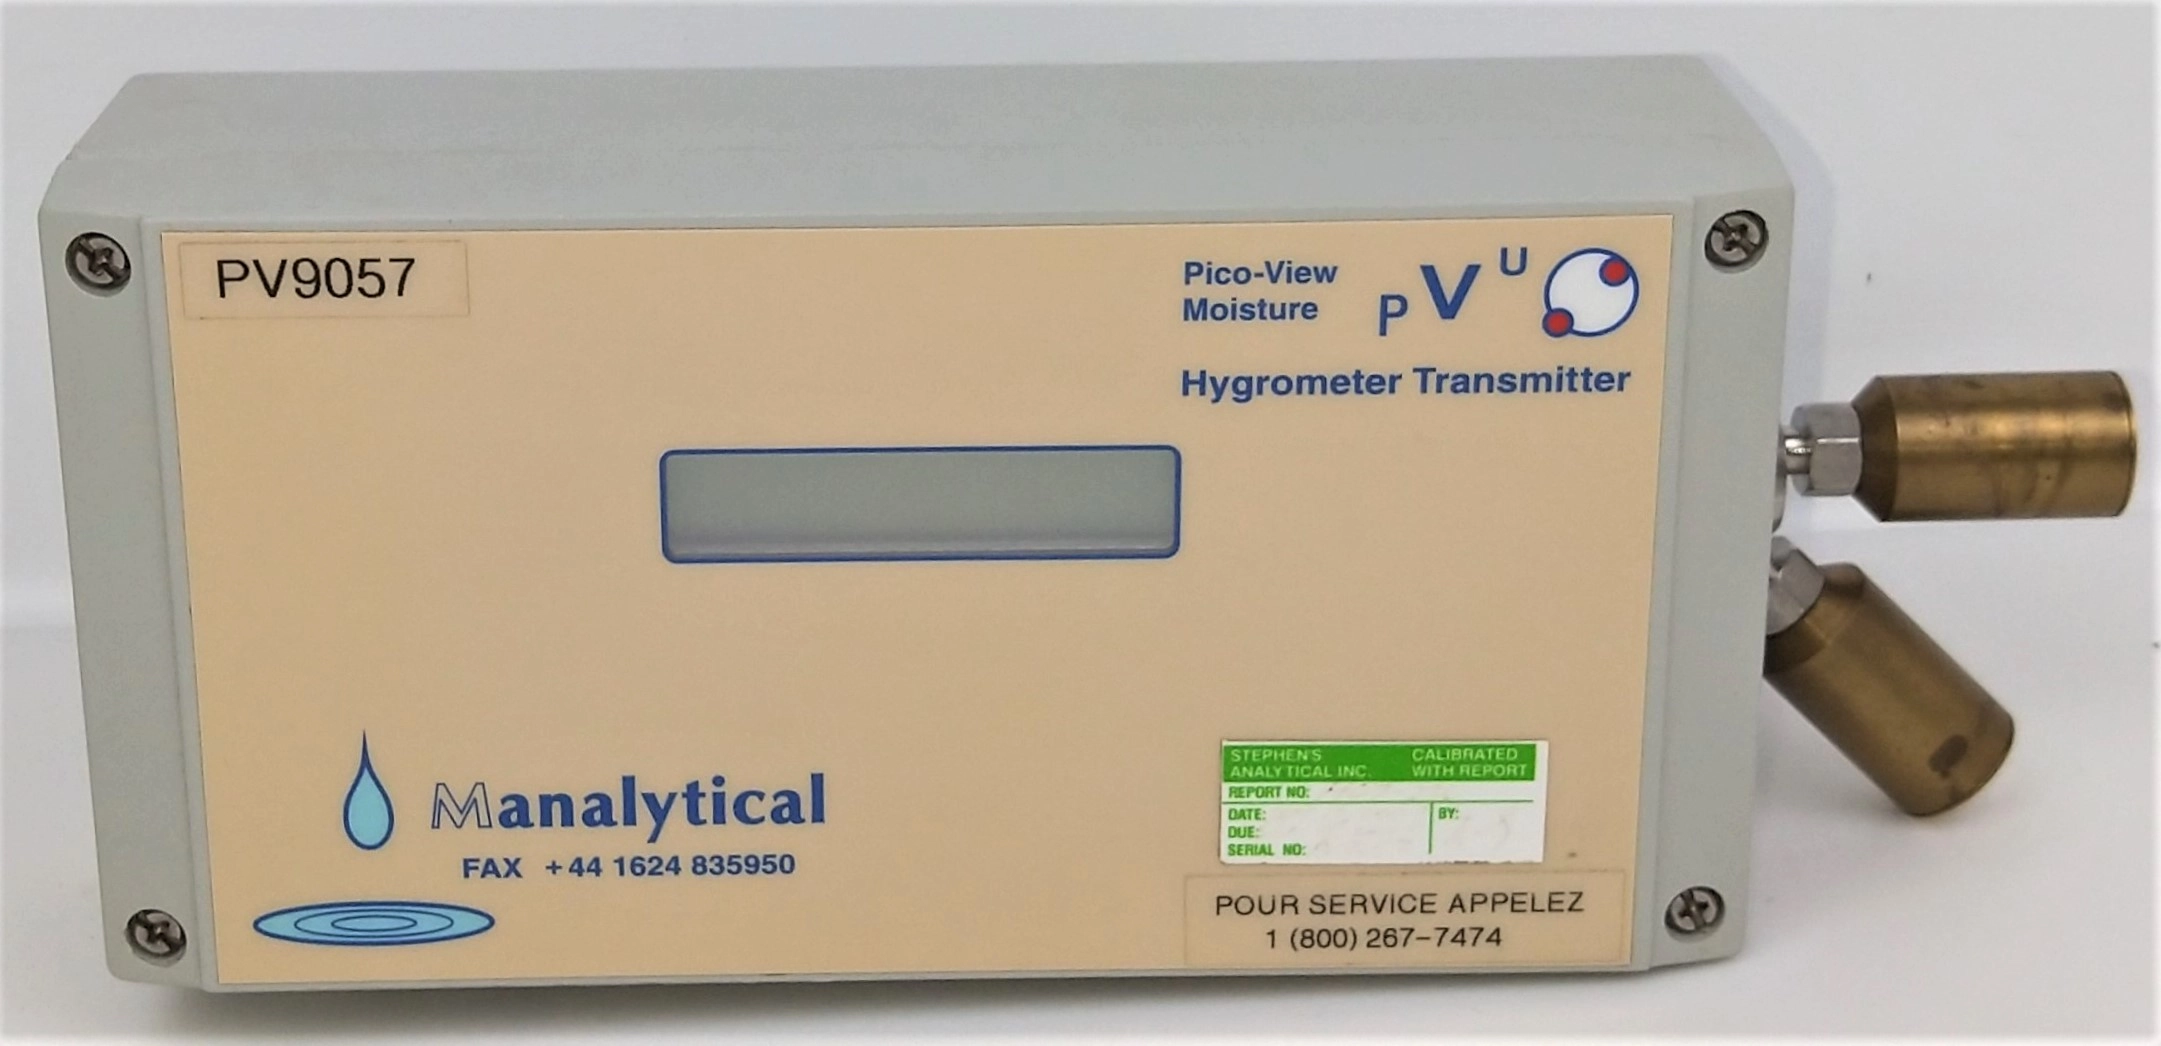 Manalytical Pico-View Moisture PV9057 Hygrometer Transmitter